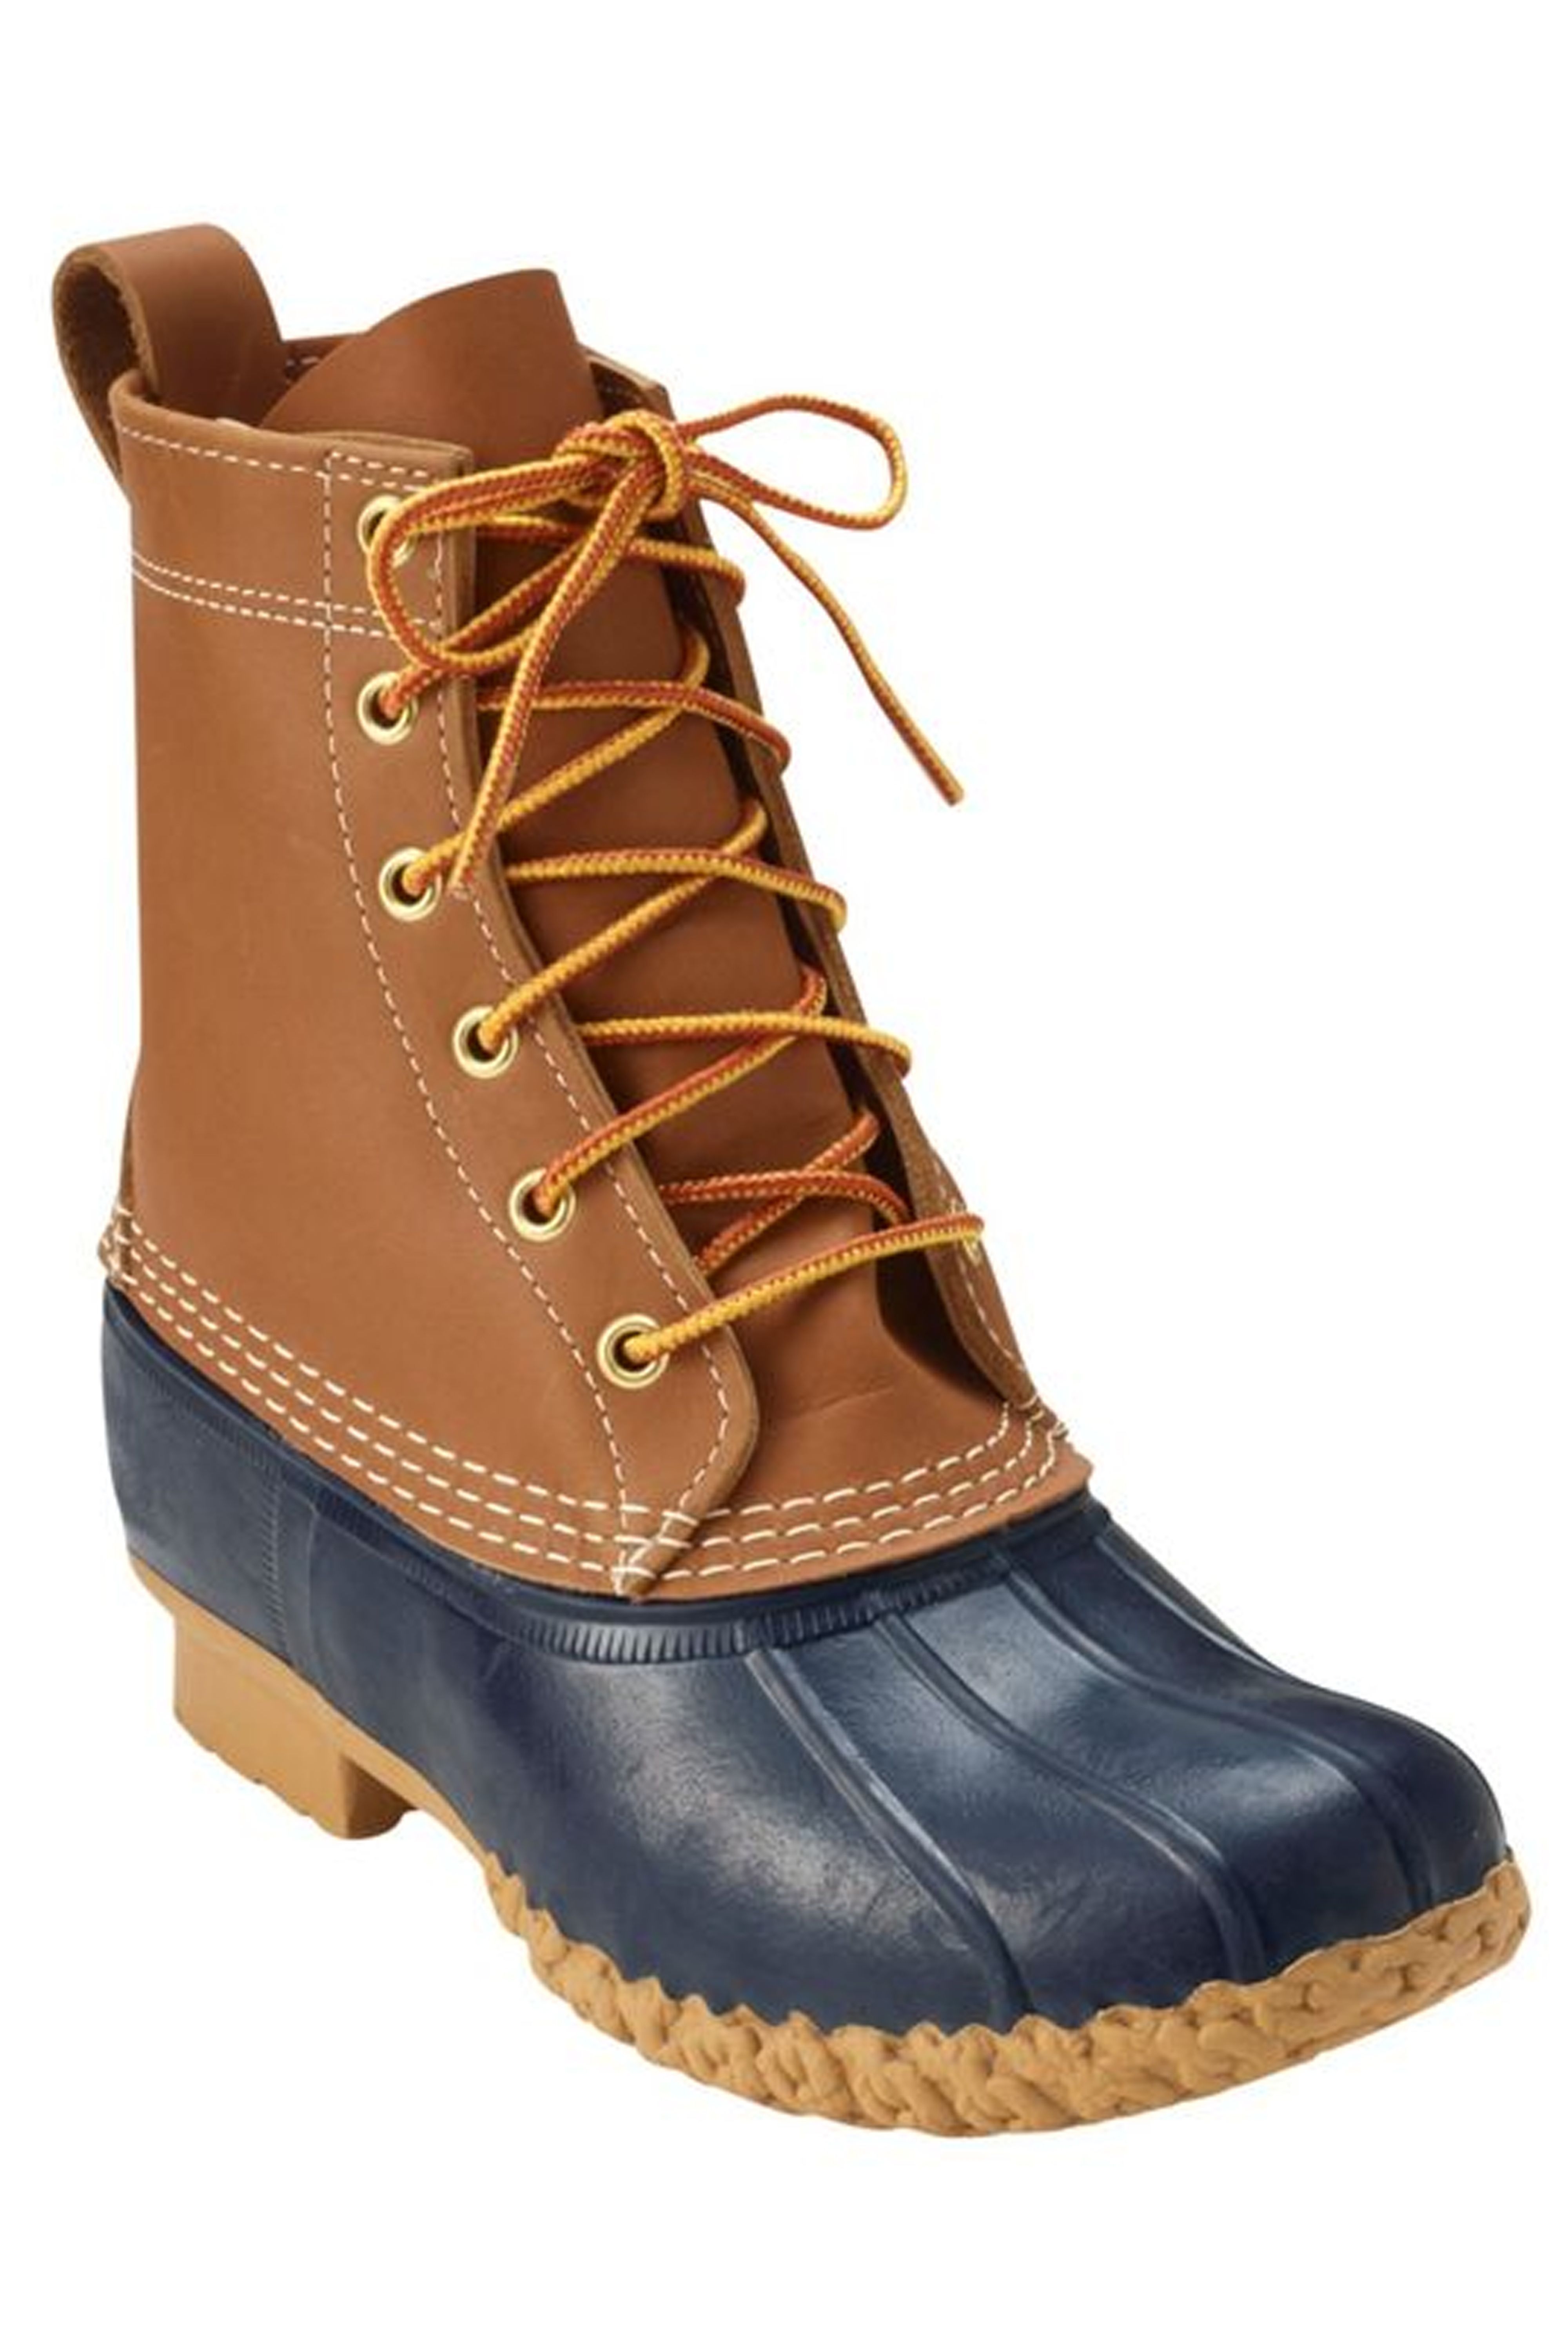 fall boots women's 219